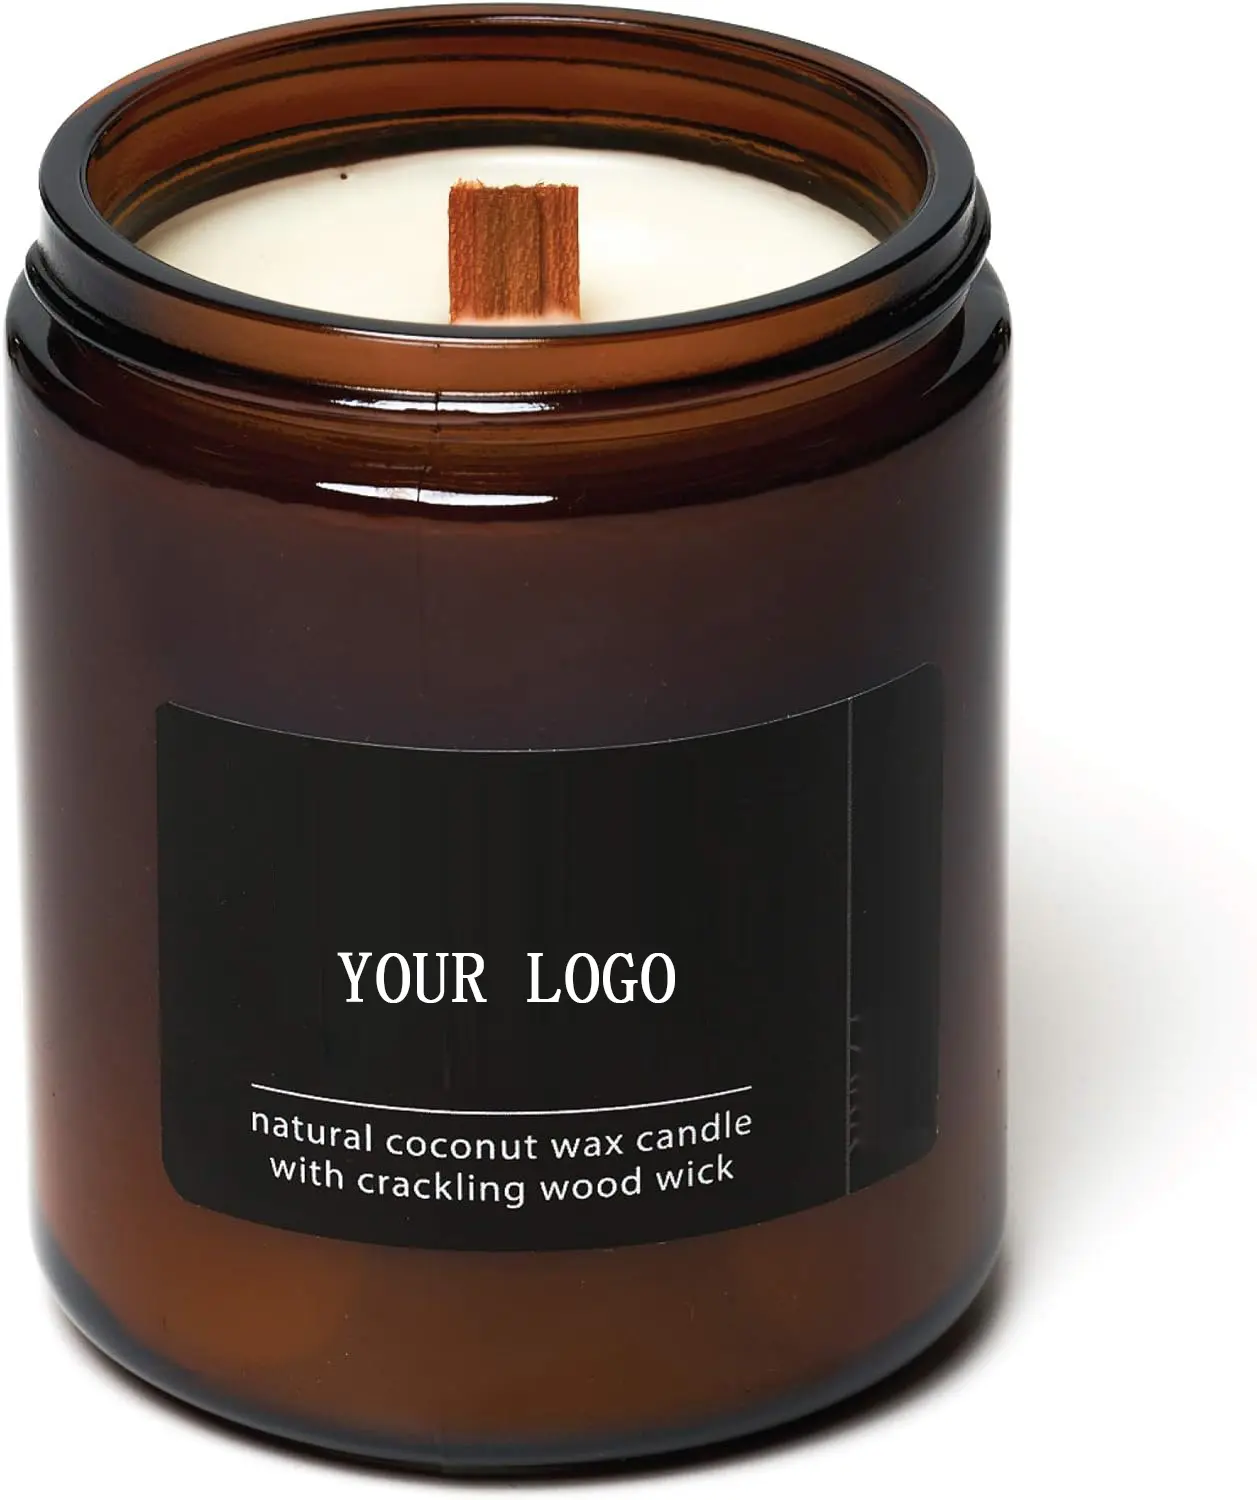 Individuelles Logo natürliche langanhaltende Kokosnusswachs Ätherische Öle Holzdocht-Kerze handgefertigt für den heimgebrauch